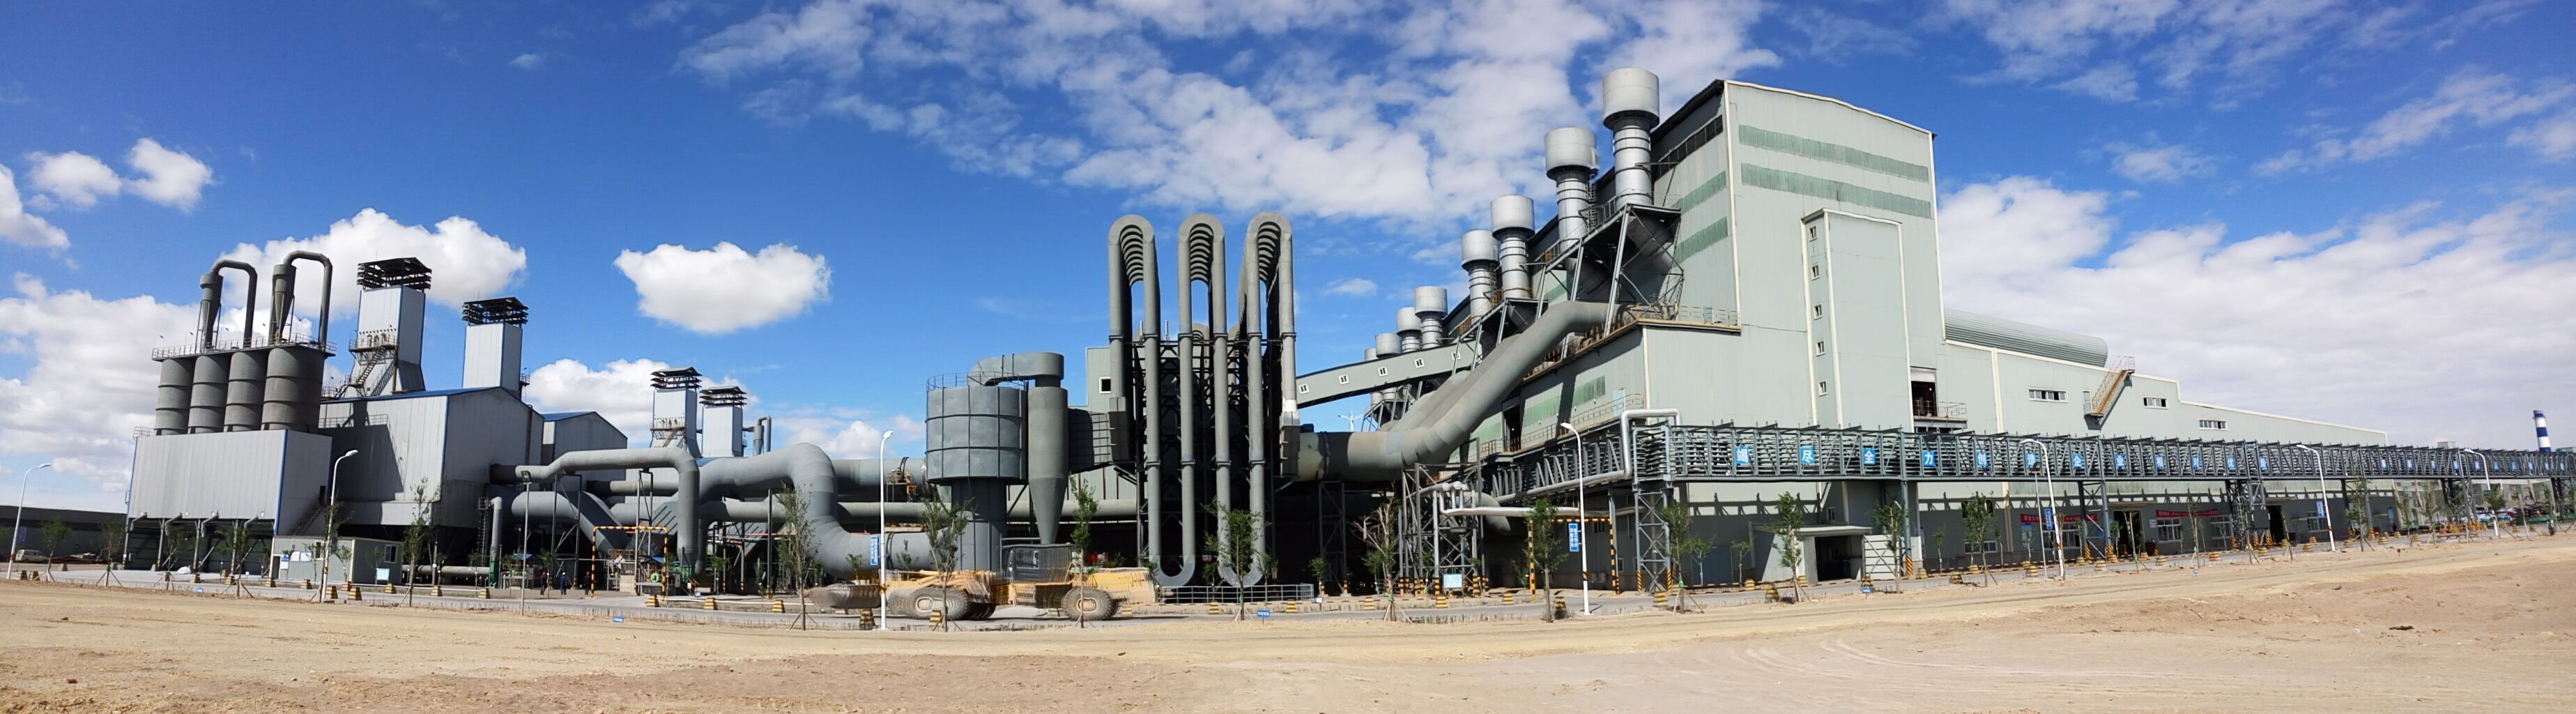 1-33000kVA工业硅矿热炉烟气净化除尘系统工程